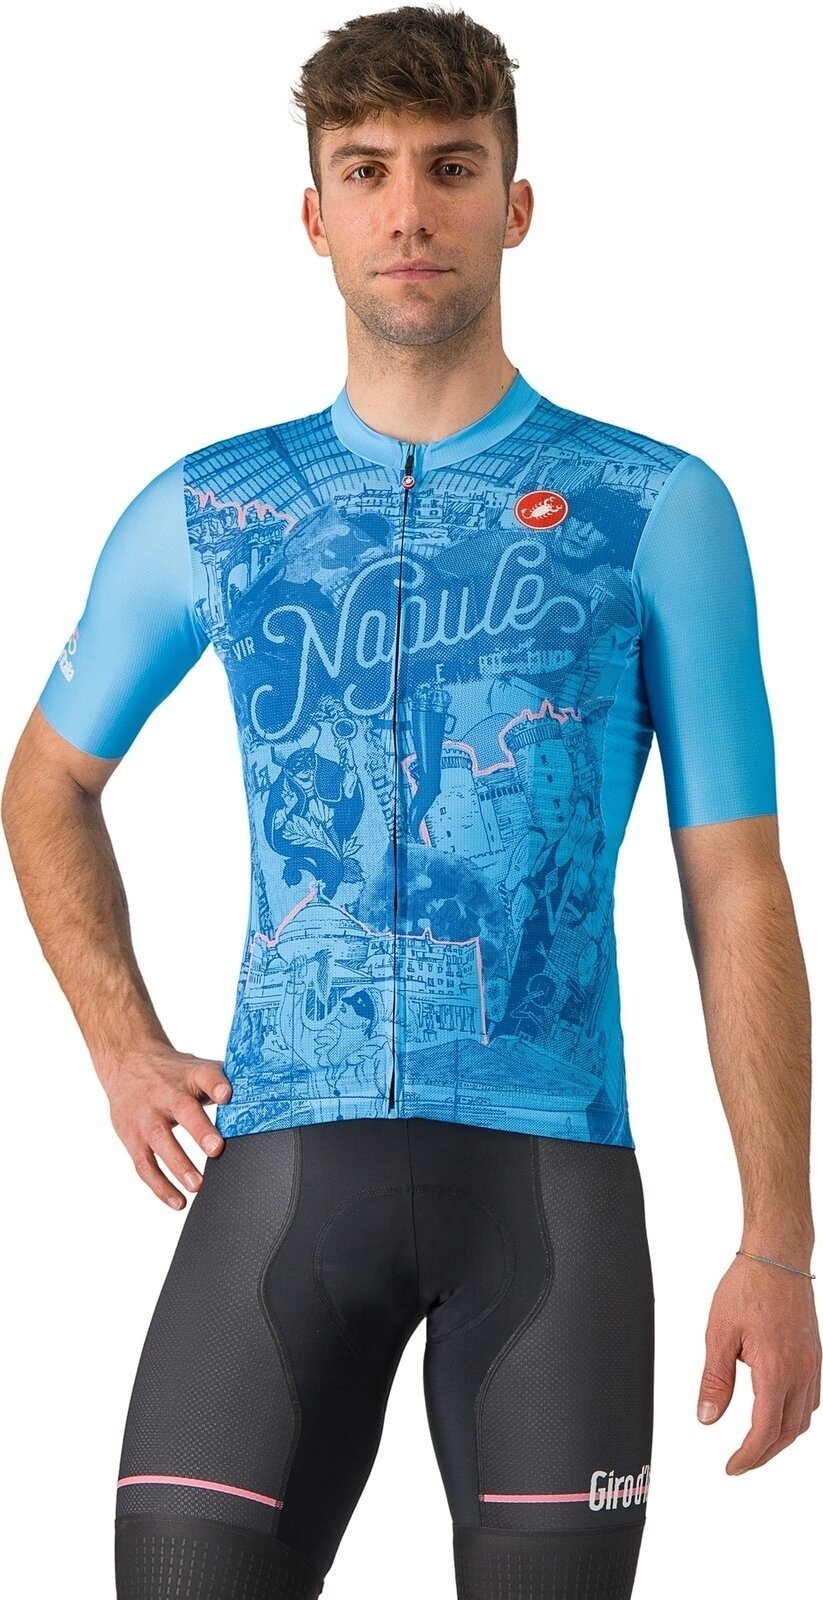 Cycling jersey Castelli Giro107 Napoli Jersey Azzurro Napoli XL